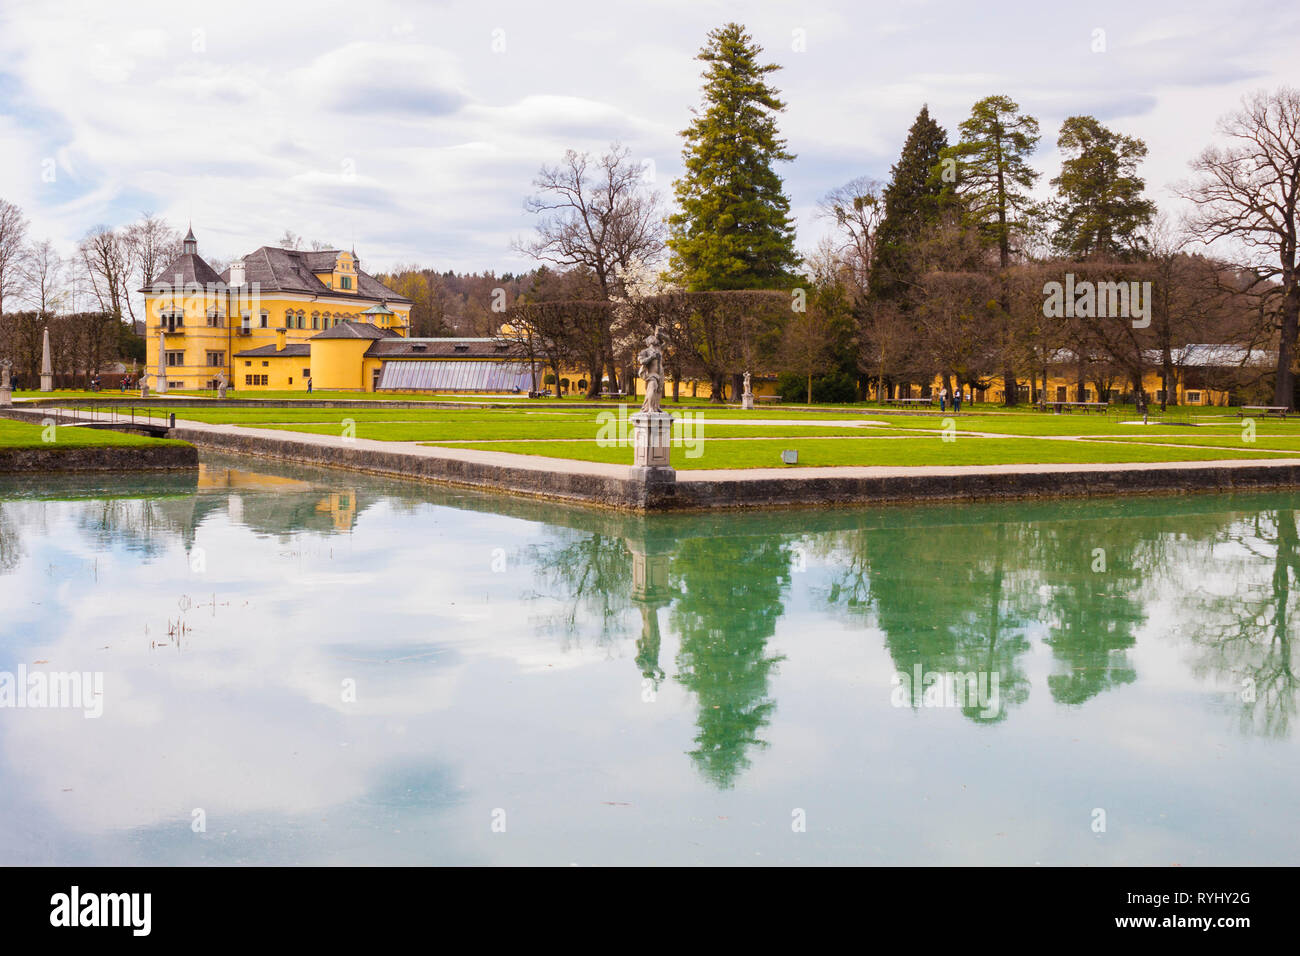 Il castello di Hellbrunn (Schloss Hellbrunn) e del parco in una bella giornata di primavera. Sculture e alberi che riflettono nelle acque della piscina. Salisburgo, Austria. Foto Stock